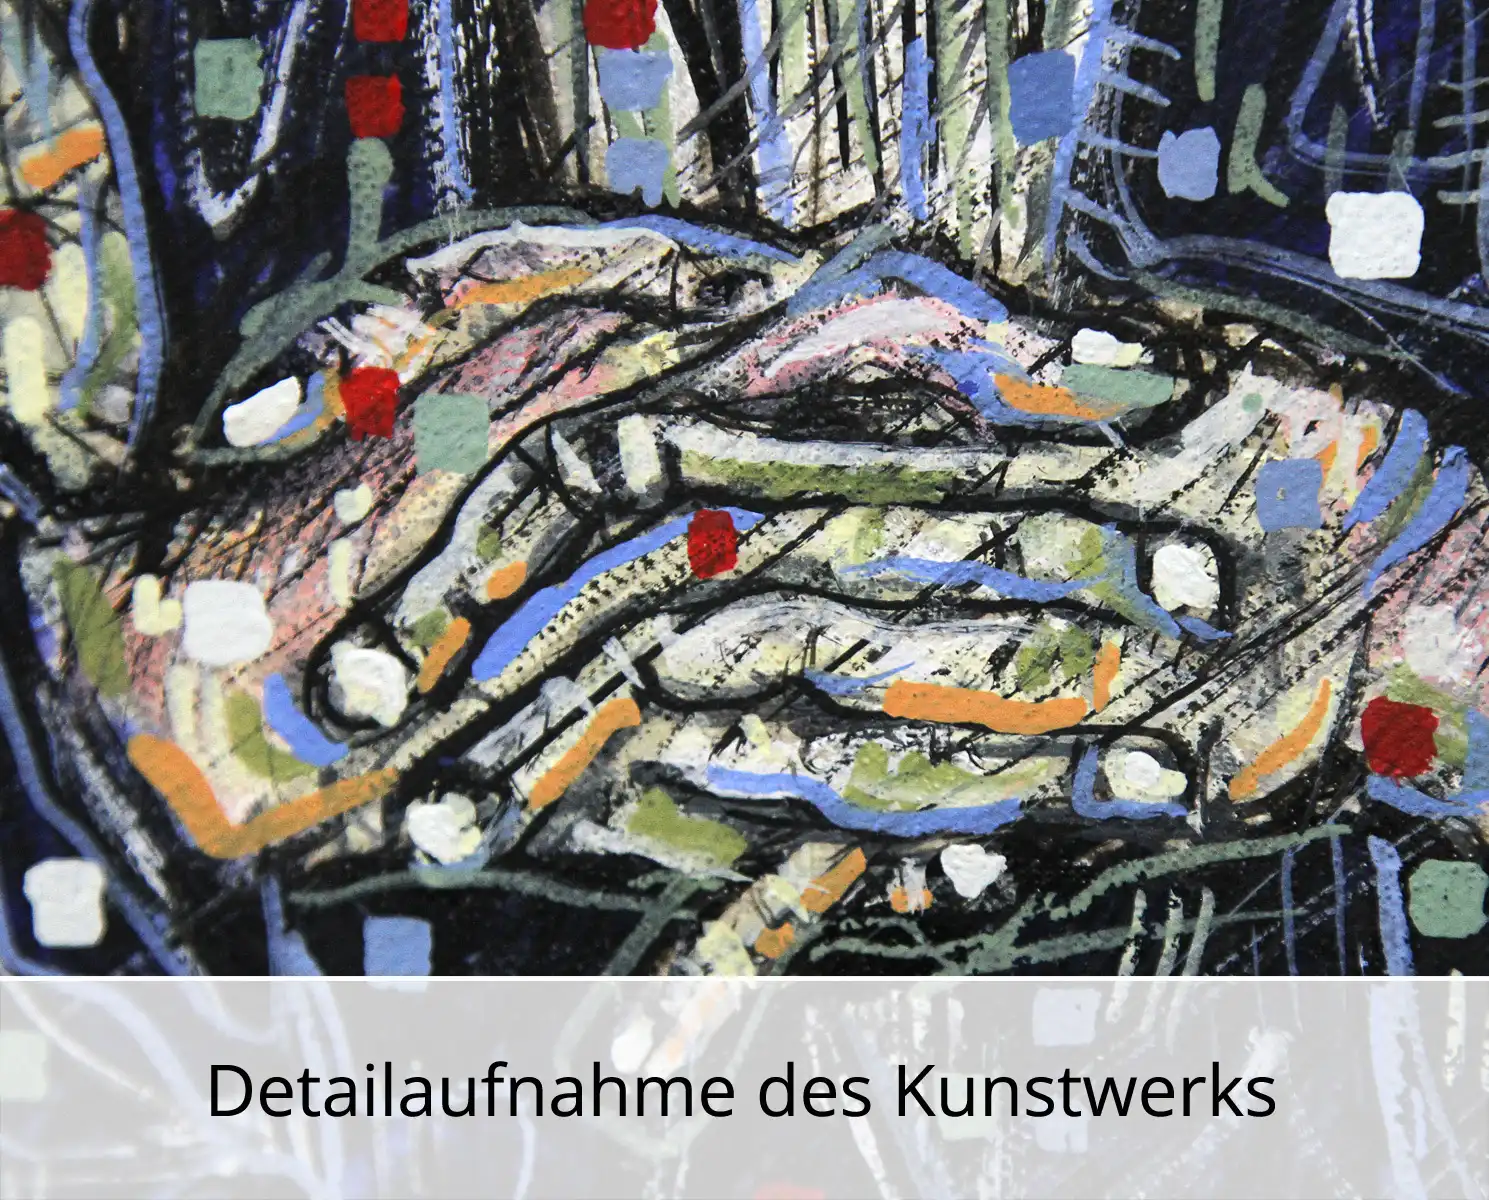 C. Blechschmidt: "Ausflug im Regen", Original/Unikat, zeitgenössisches Ölgemälde